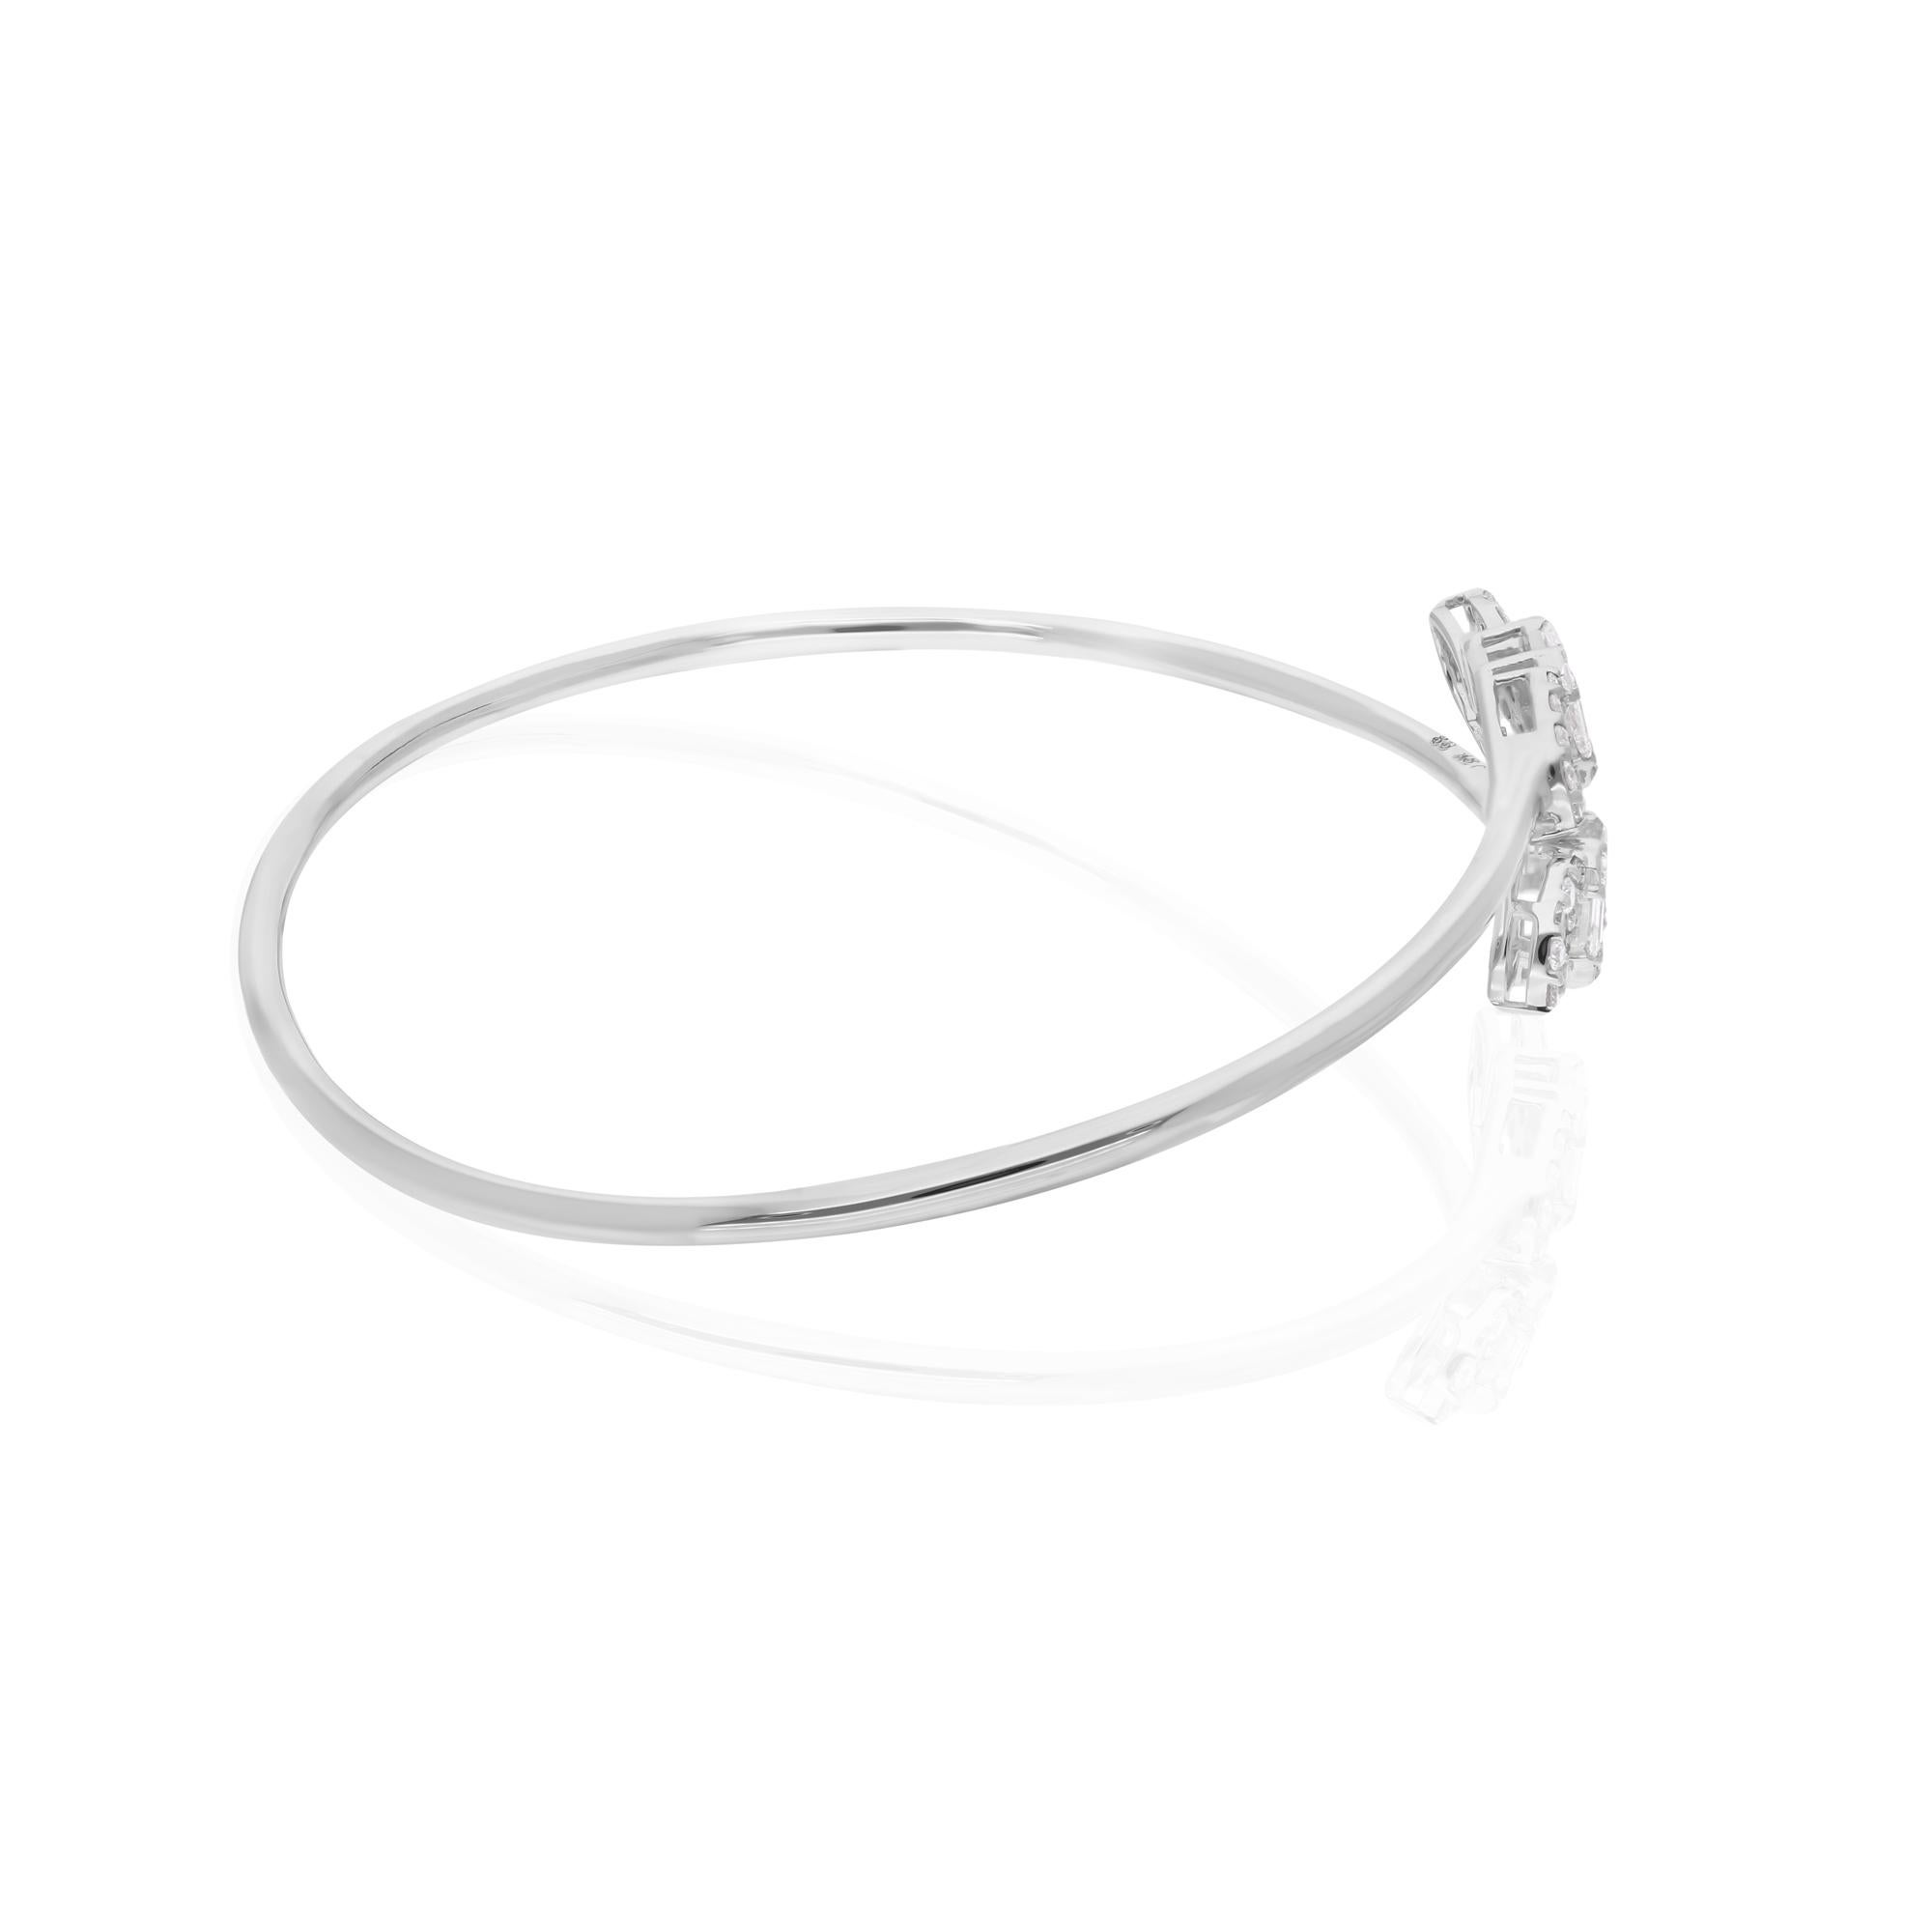 Laissez-vous séduire par l'élégance intemporelle de ce bracelet-bracelet exquis en diamant rond baguette de 0,90 carat, réalisé avec une attention méticuleuse aux détails en or blanc 14 carats. Ce superbe bijou respire la sophistication et le luxe,